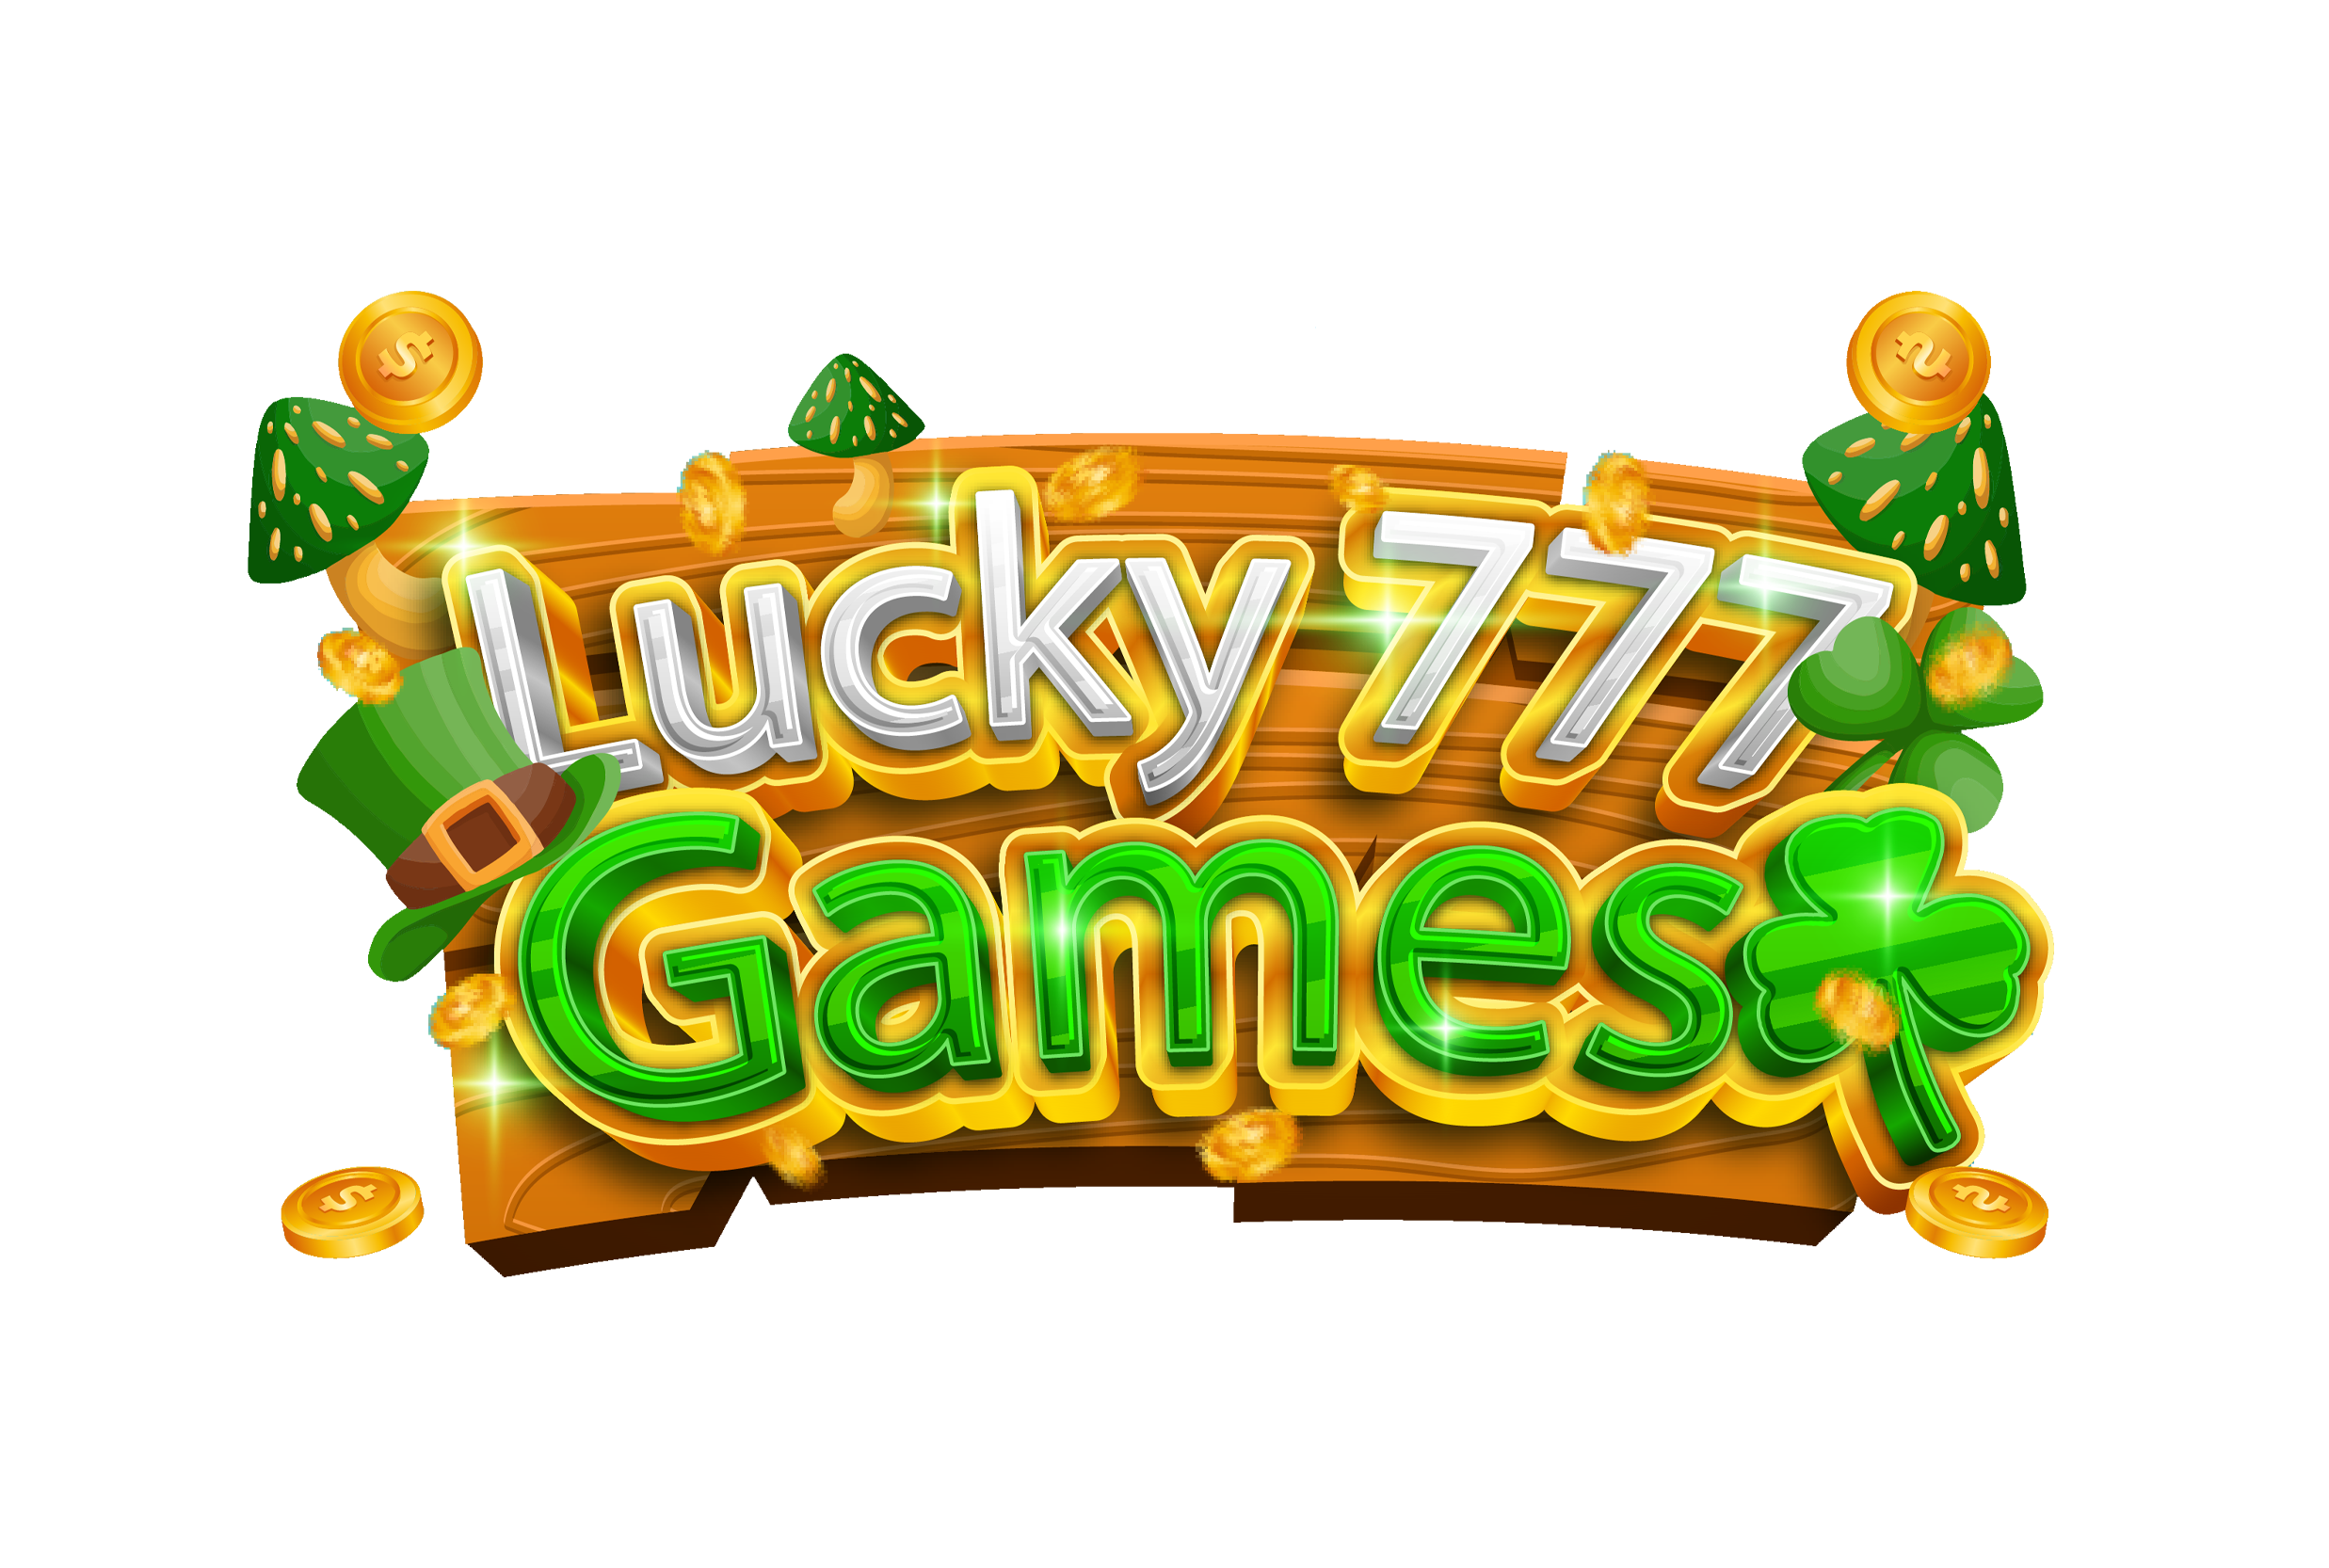 Luckygames777